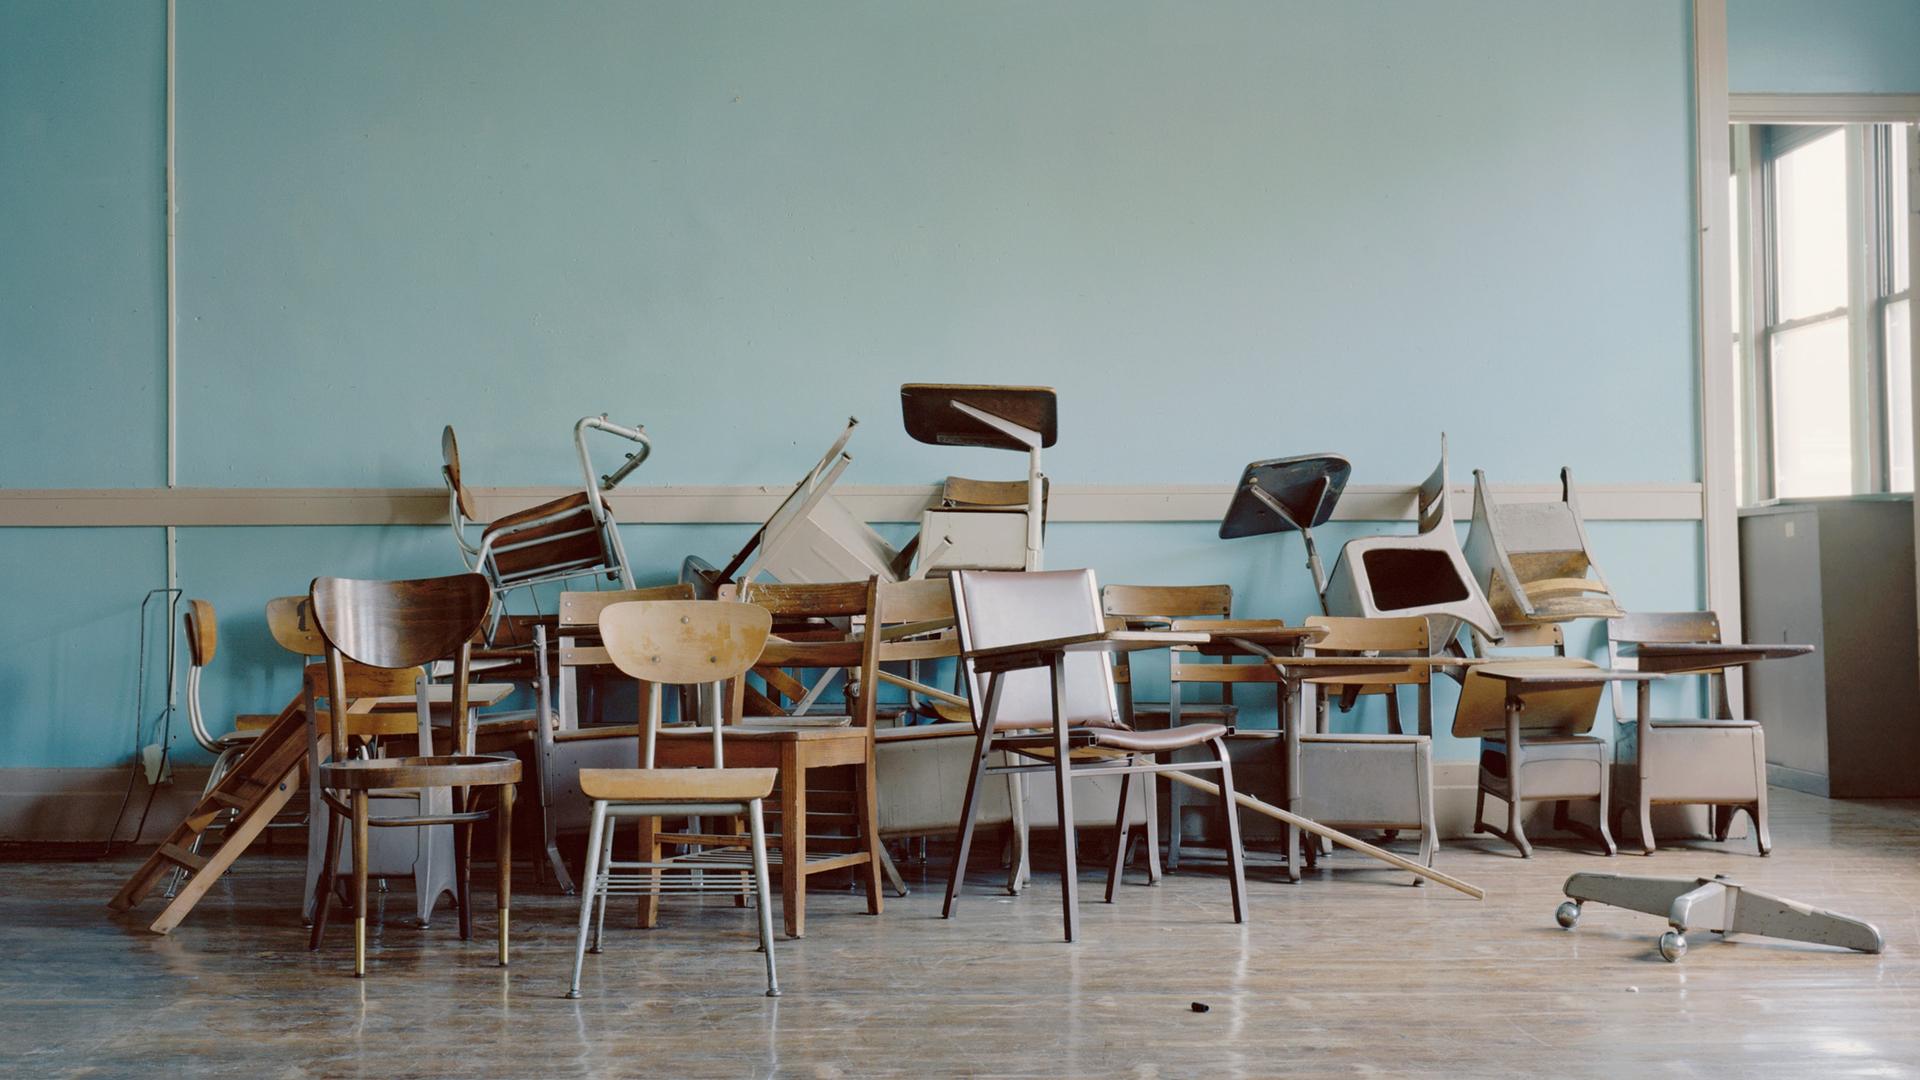 Alte Stühle liegen in einem leeren Klassenraum herum.